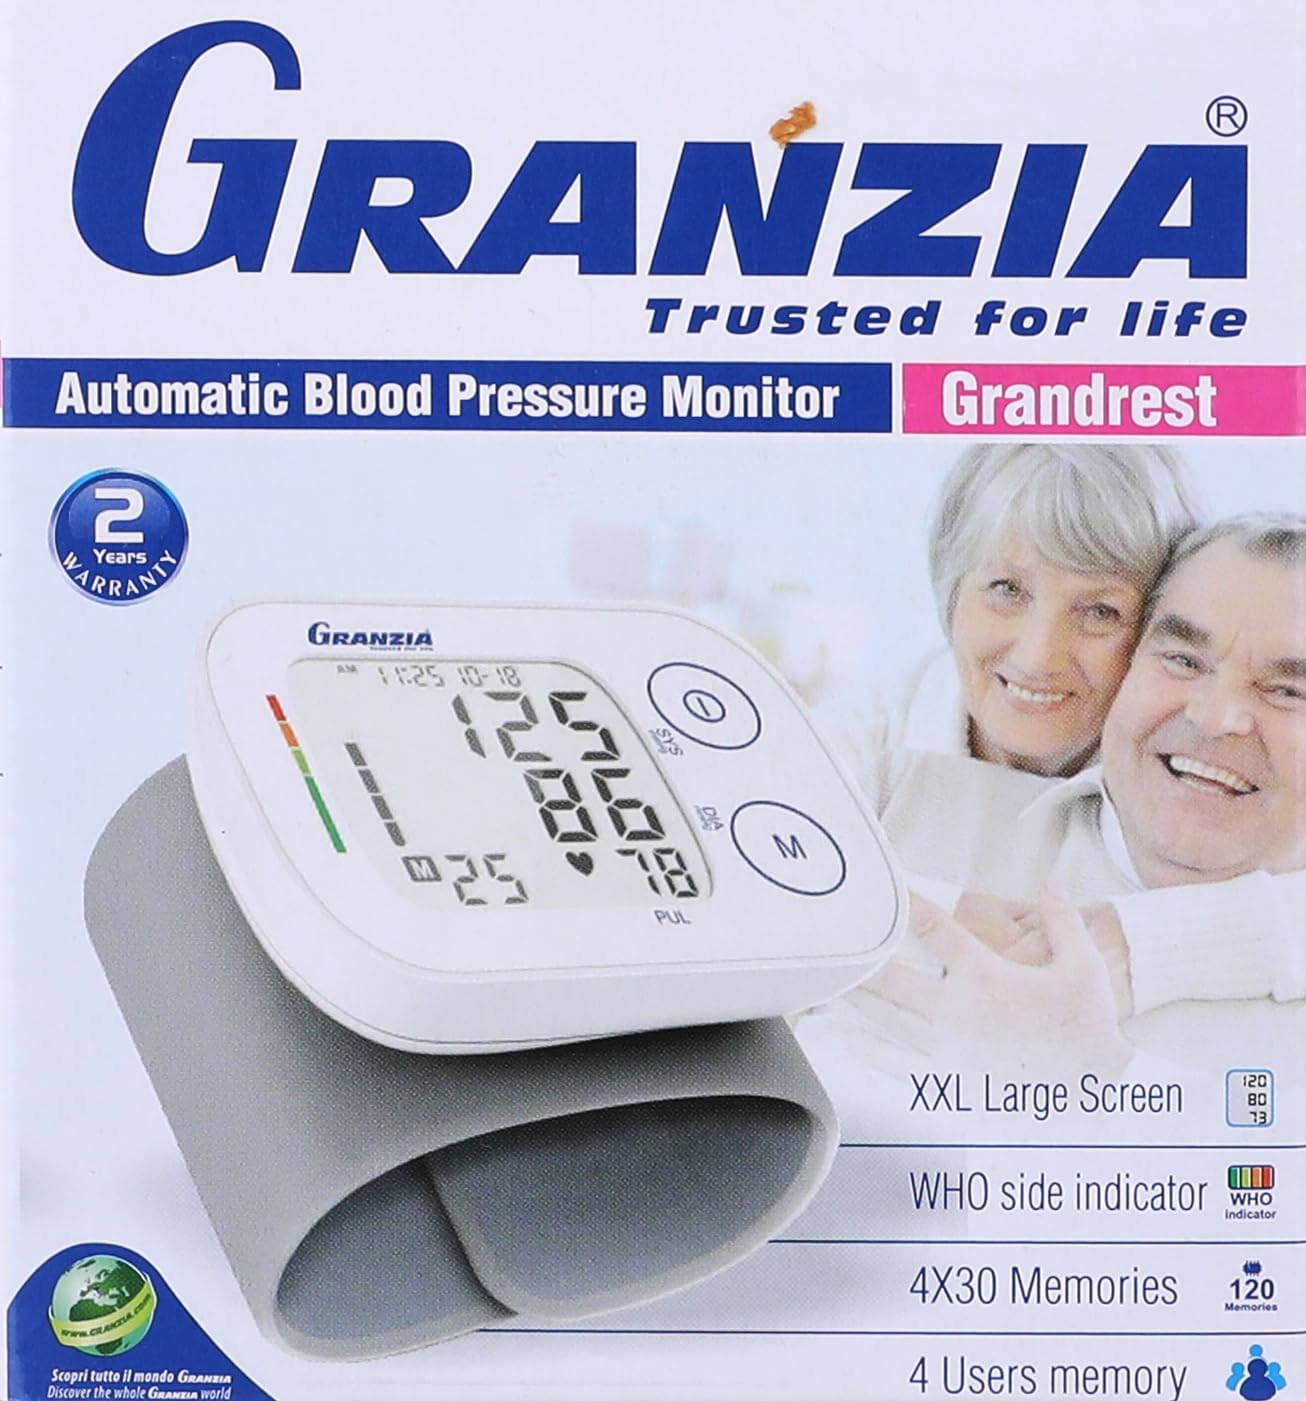  جرانزيا جراندريست جهاز قياس ضغط الدم الأوتوماتيكي للمعصم